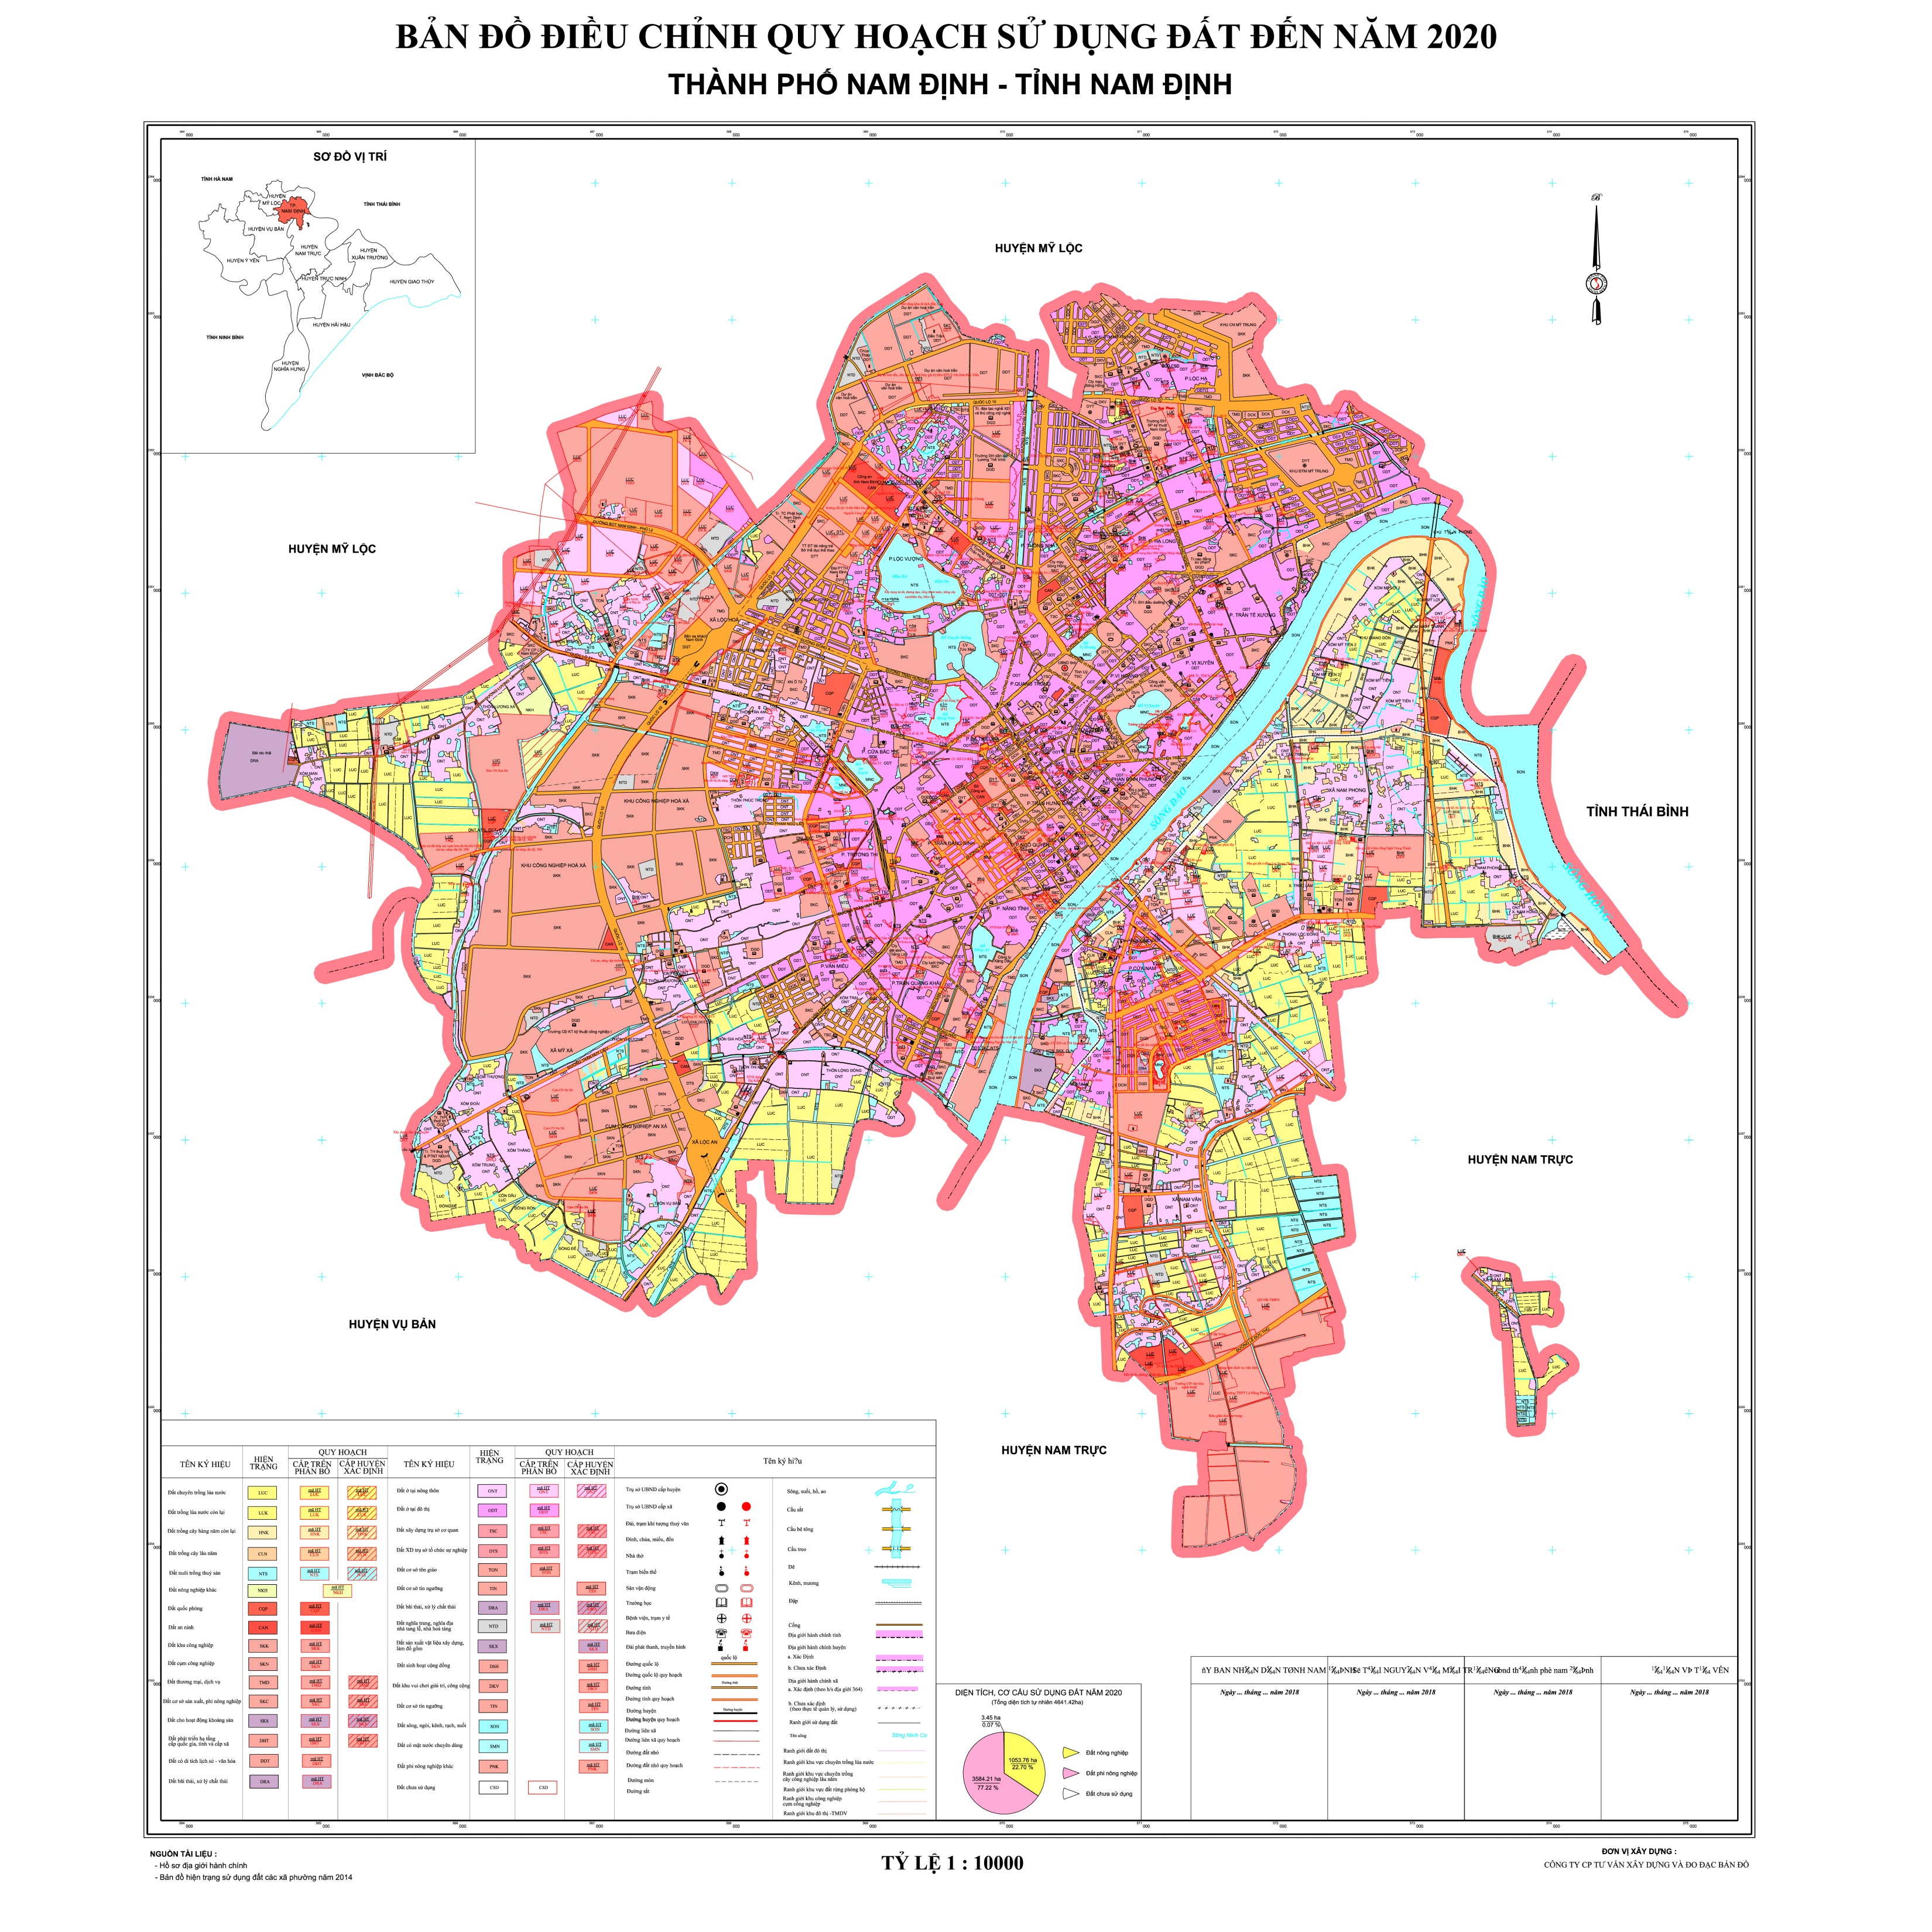 Bản đồ hành chính tỉnh Nam Định năm 2024 đã được cập nhật đầy đủ thông tin mới nhất và thể hiện sự phát triển của tỉnh trong nhiều lĩnh vực. Hãy đến và khám phá những điều thú vị trên bản đồ này!